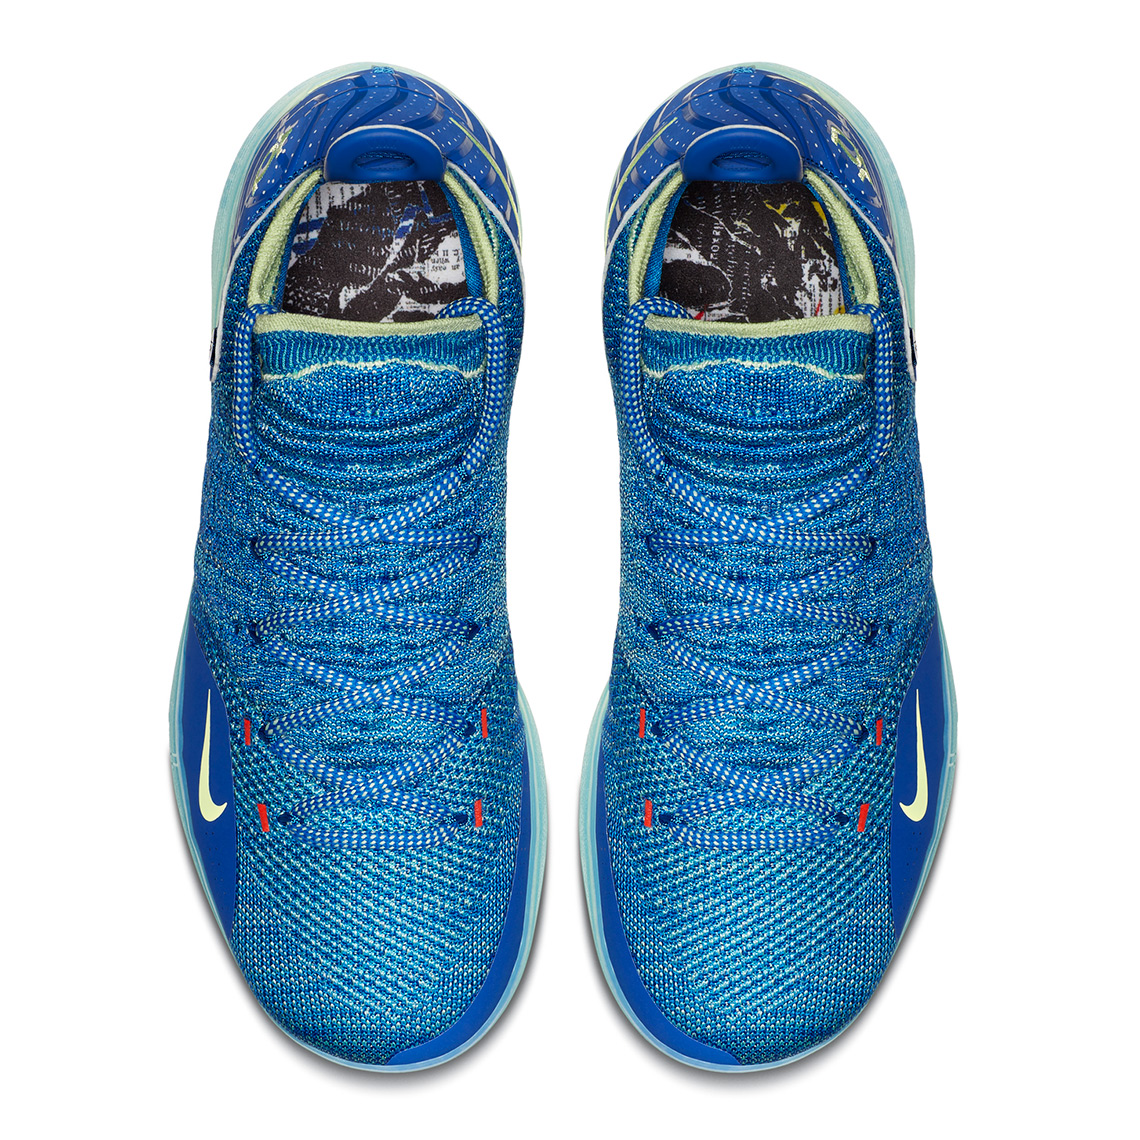 Nike Kd 11 Release Info 5